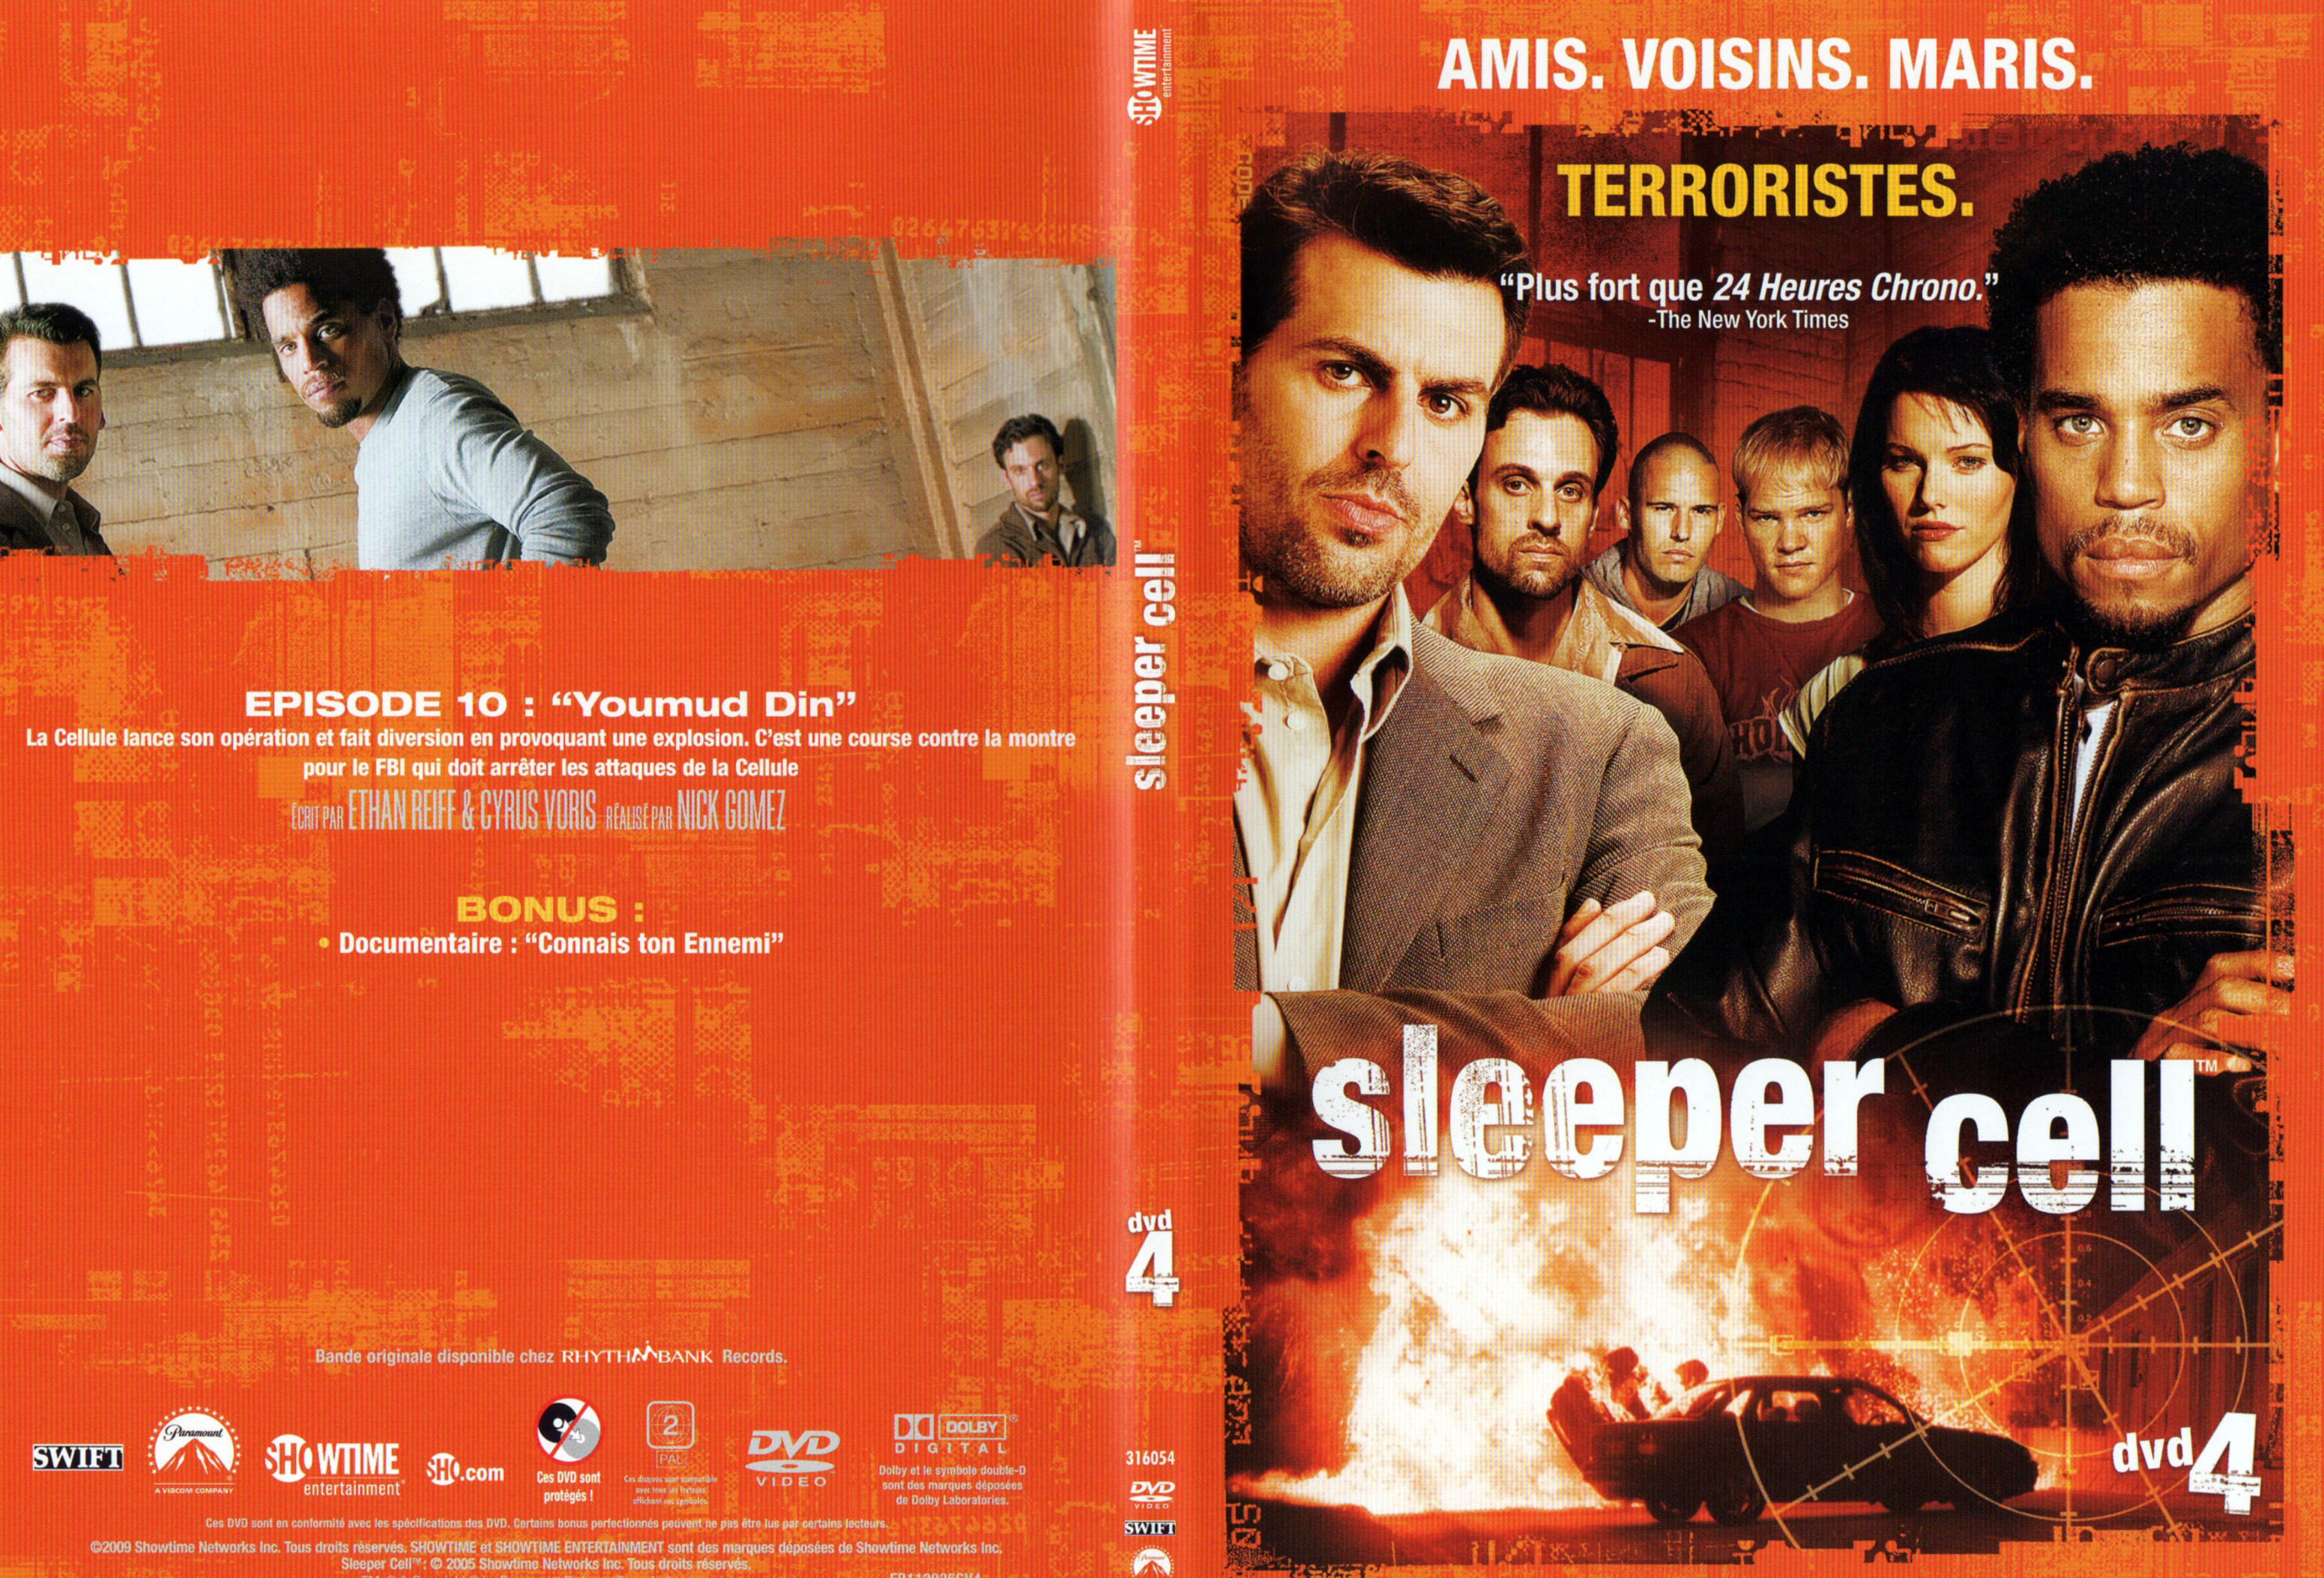 Jaquette DVD Sleeper cell Saison 1 DVD 4